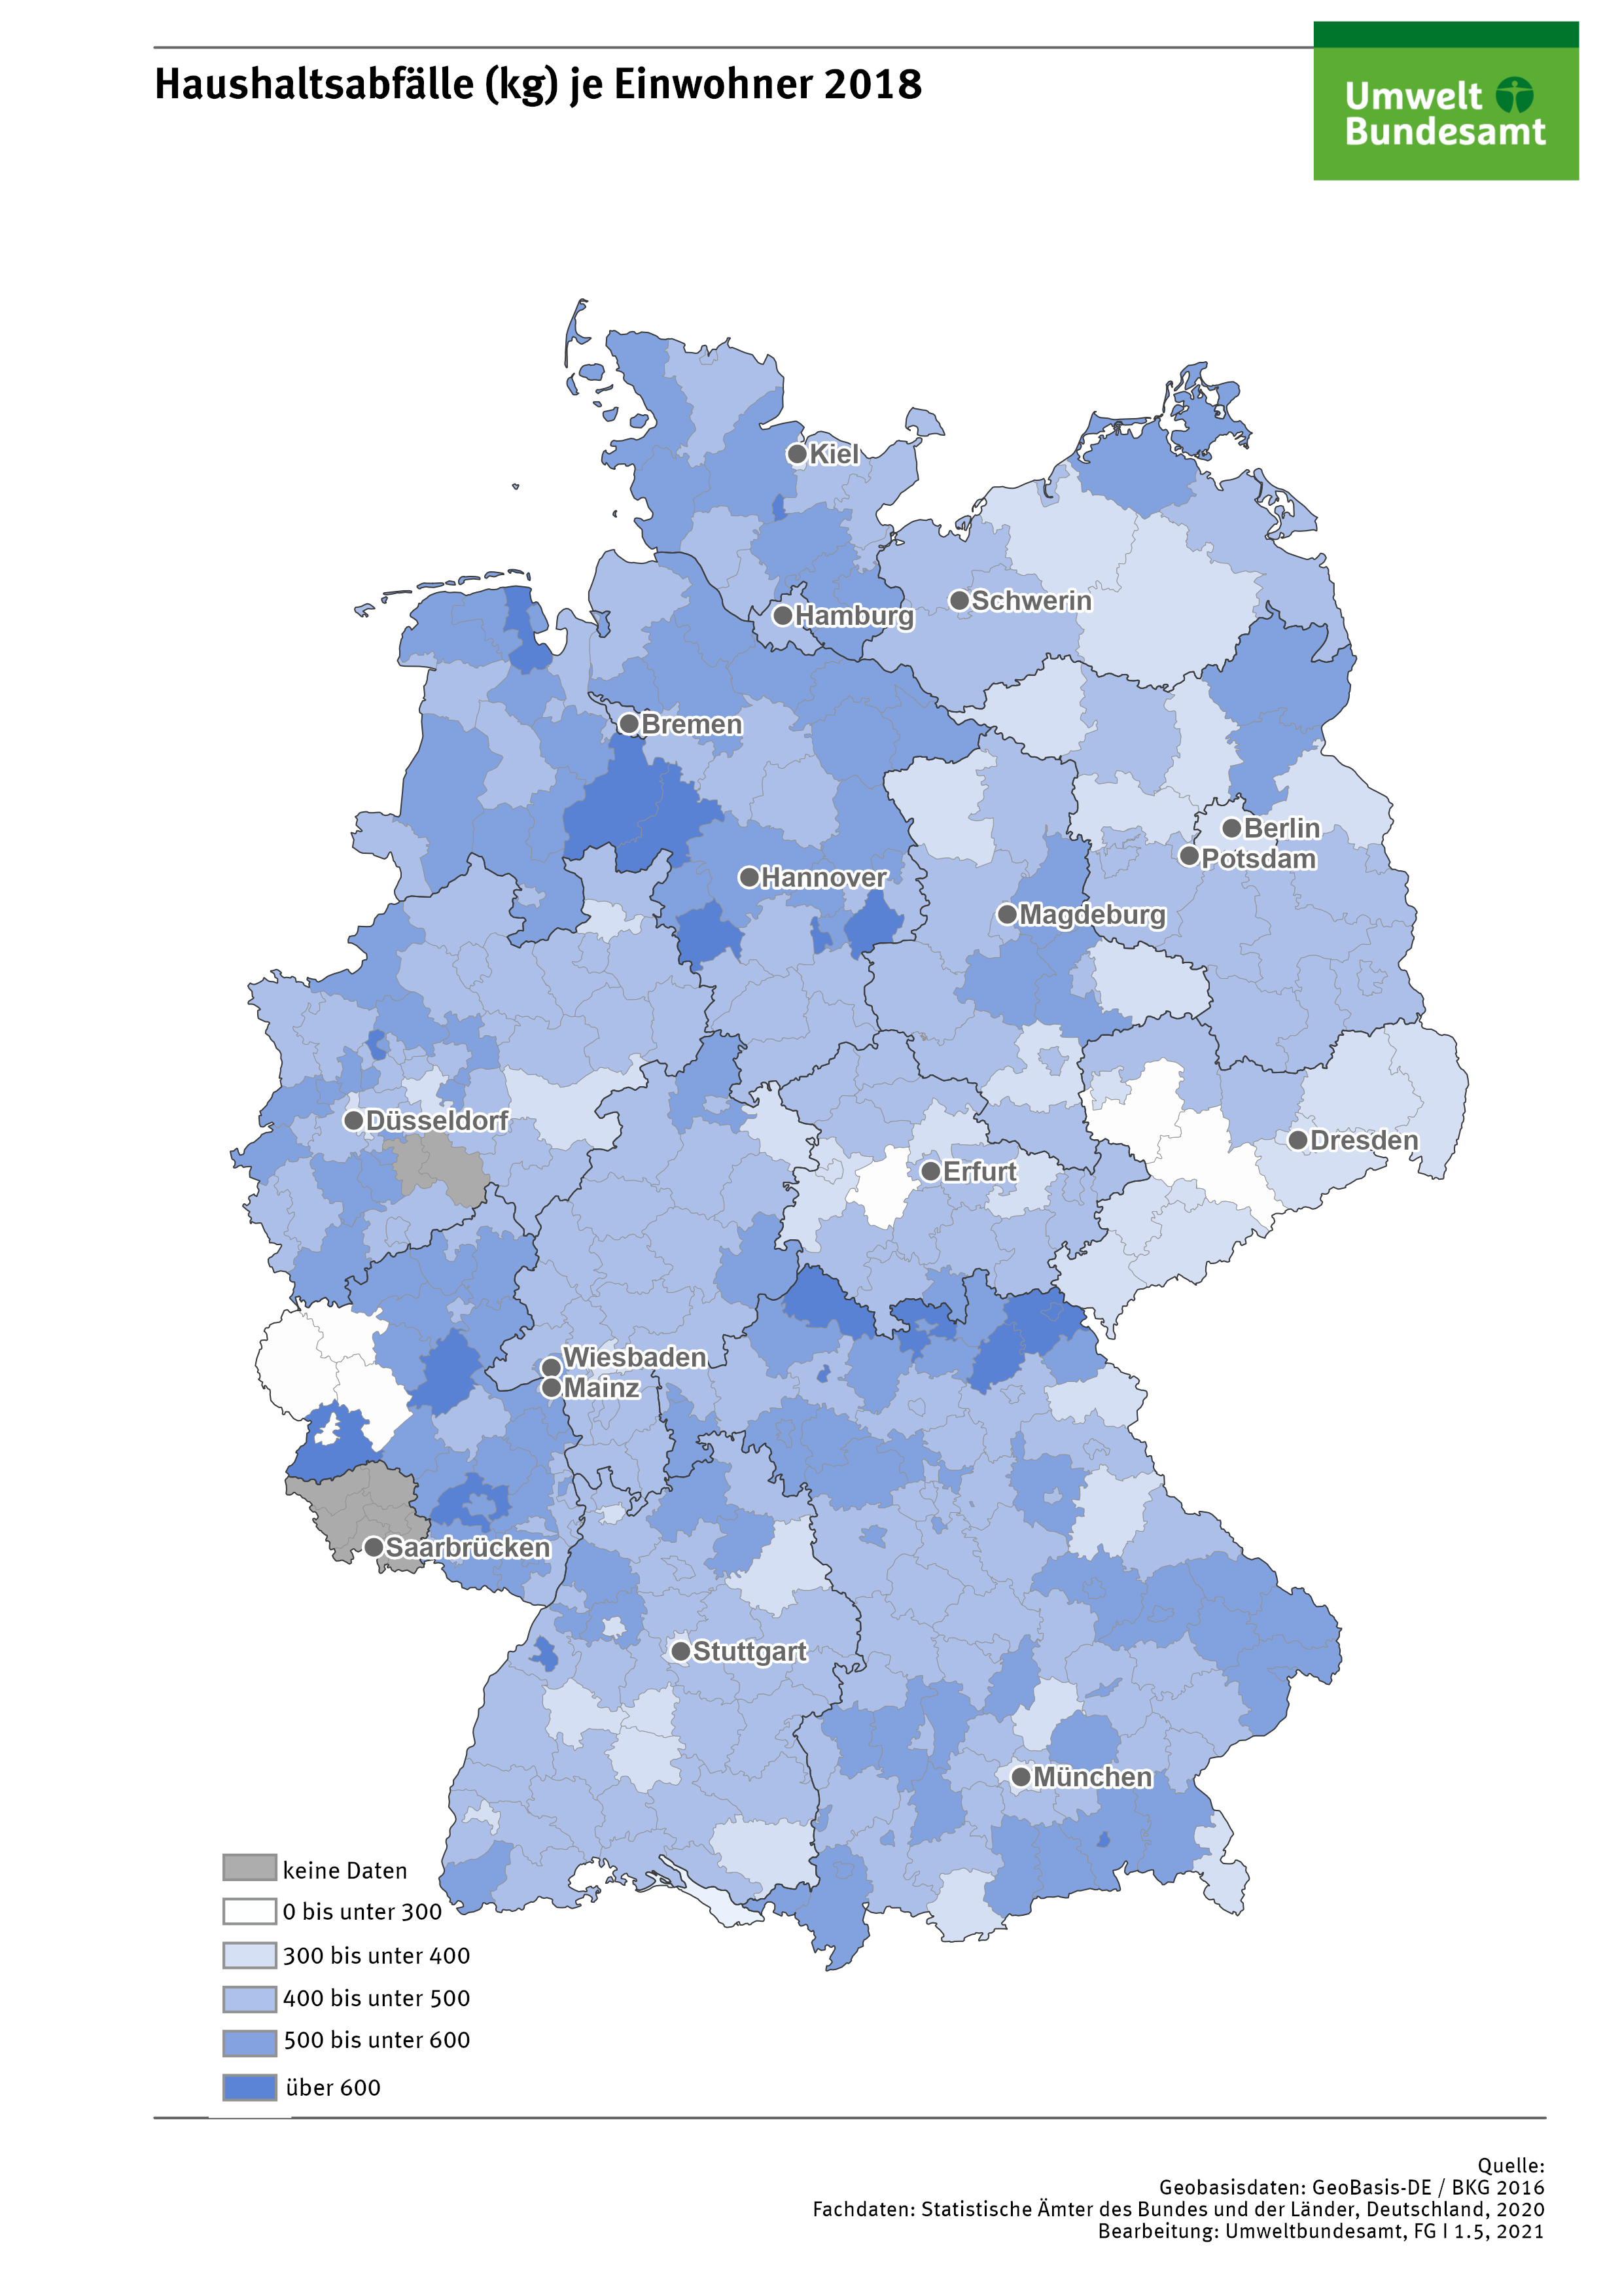 Die Karte zeigt die Verteilung von Haushaltsabfällen in Deutschland (in kg je Einwohner).